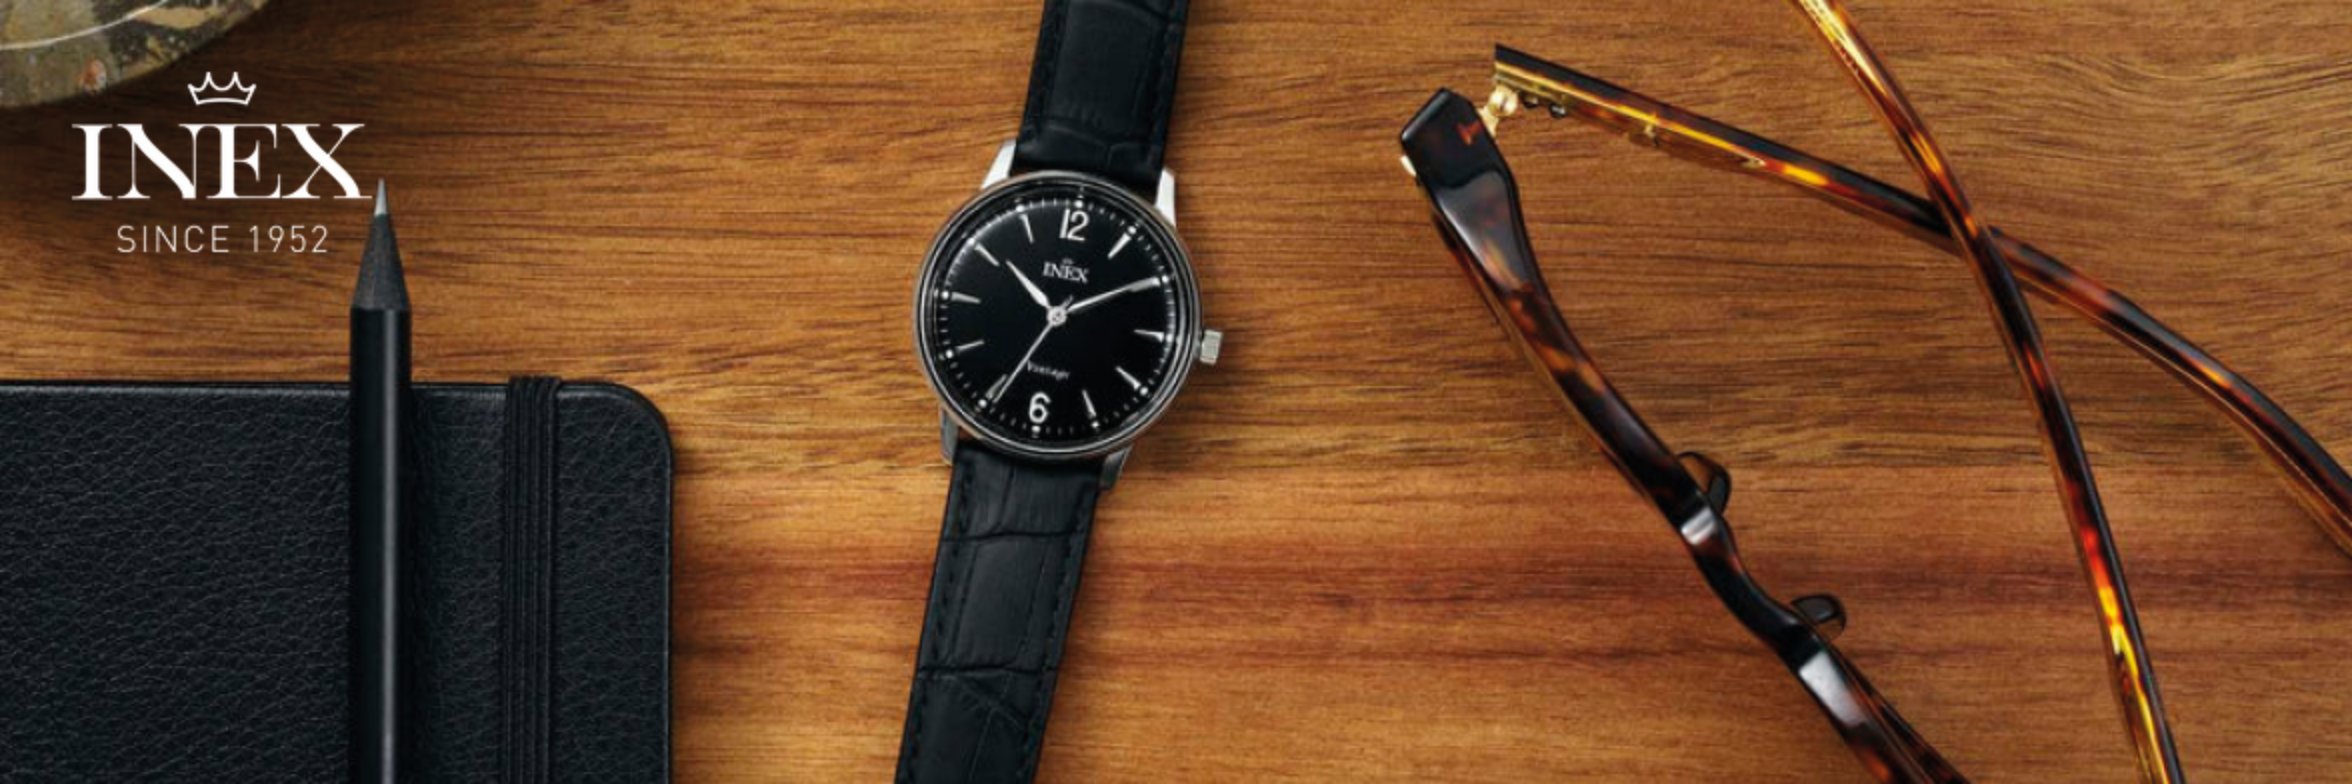 Inex - Fine Watches since 1952. – INEX